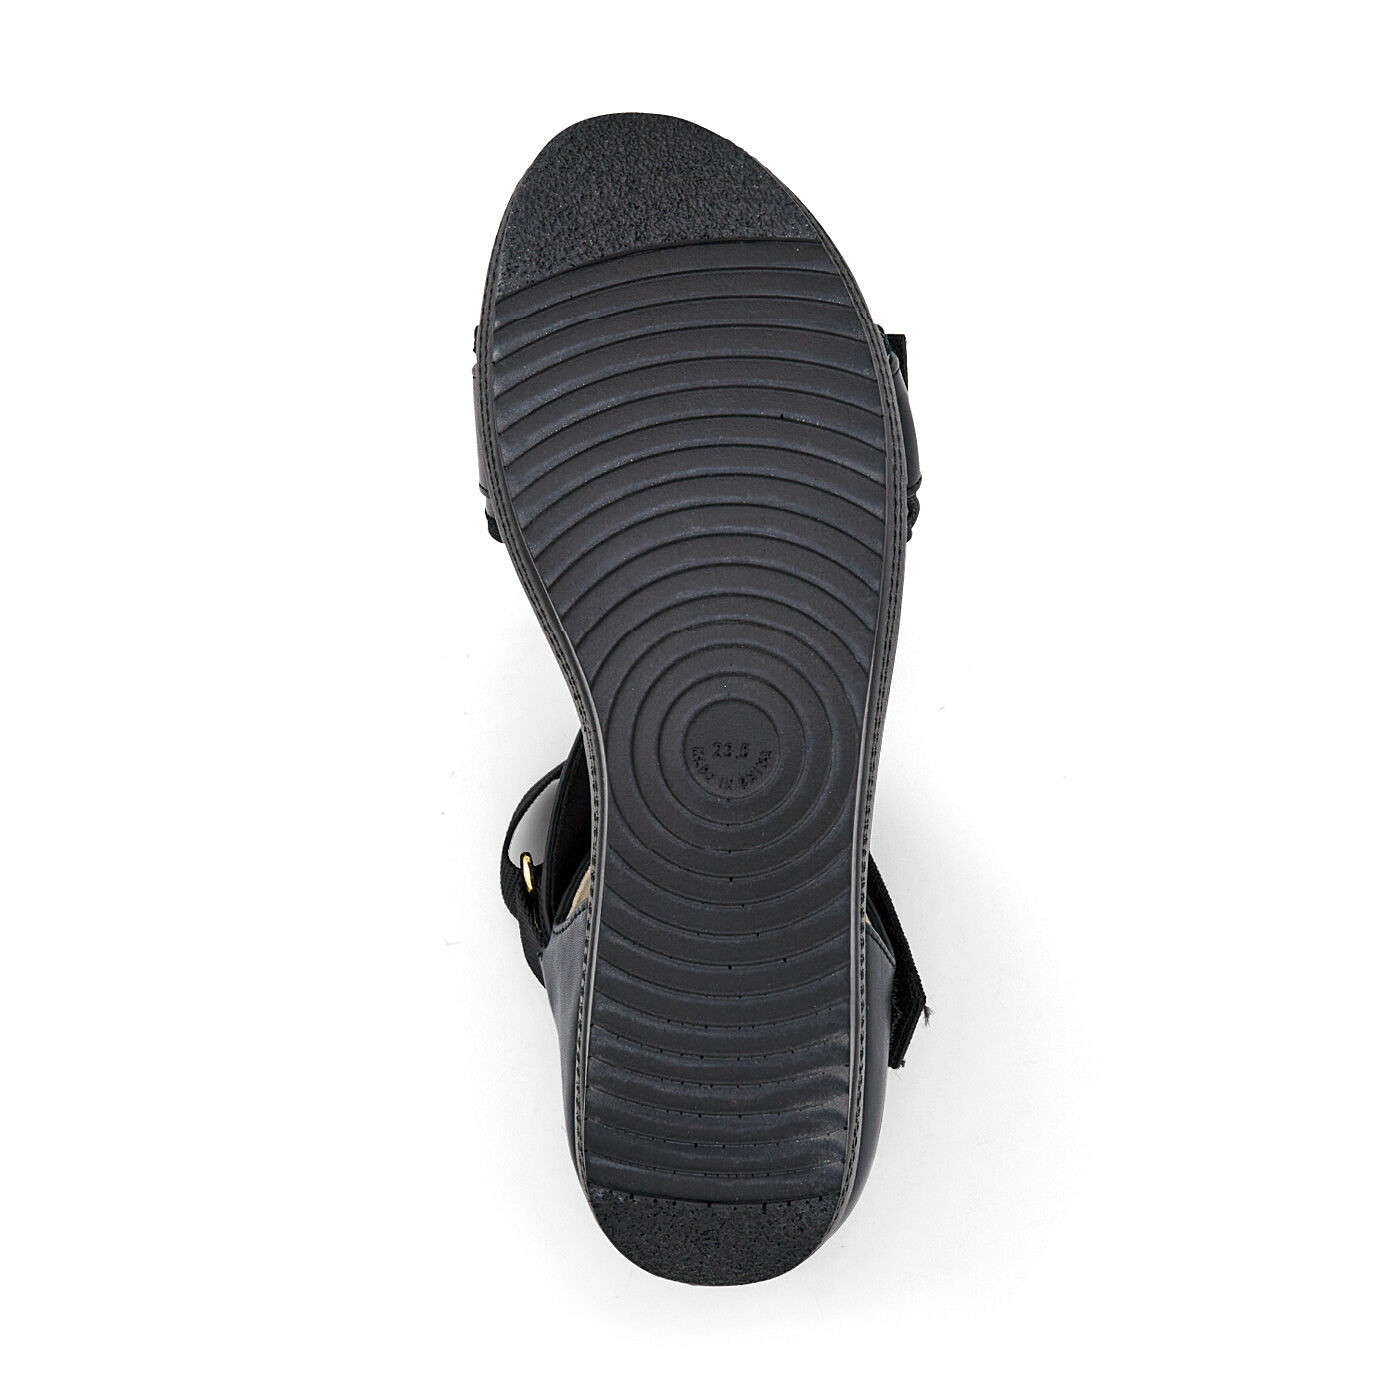 Real Stock|UP.de　スイスイ歩ける　Z型ベルトでしっかりフィット　5つ星サンダル〈ブラック〉|SOLE。